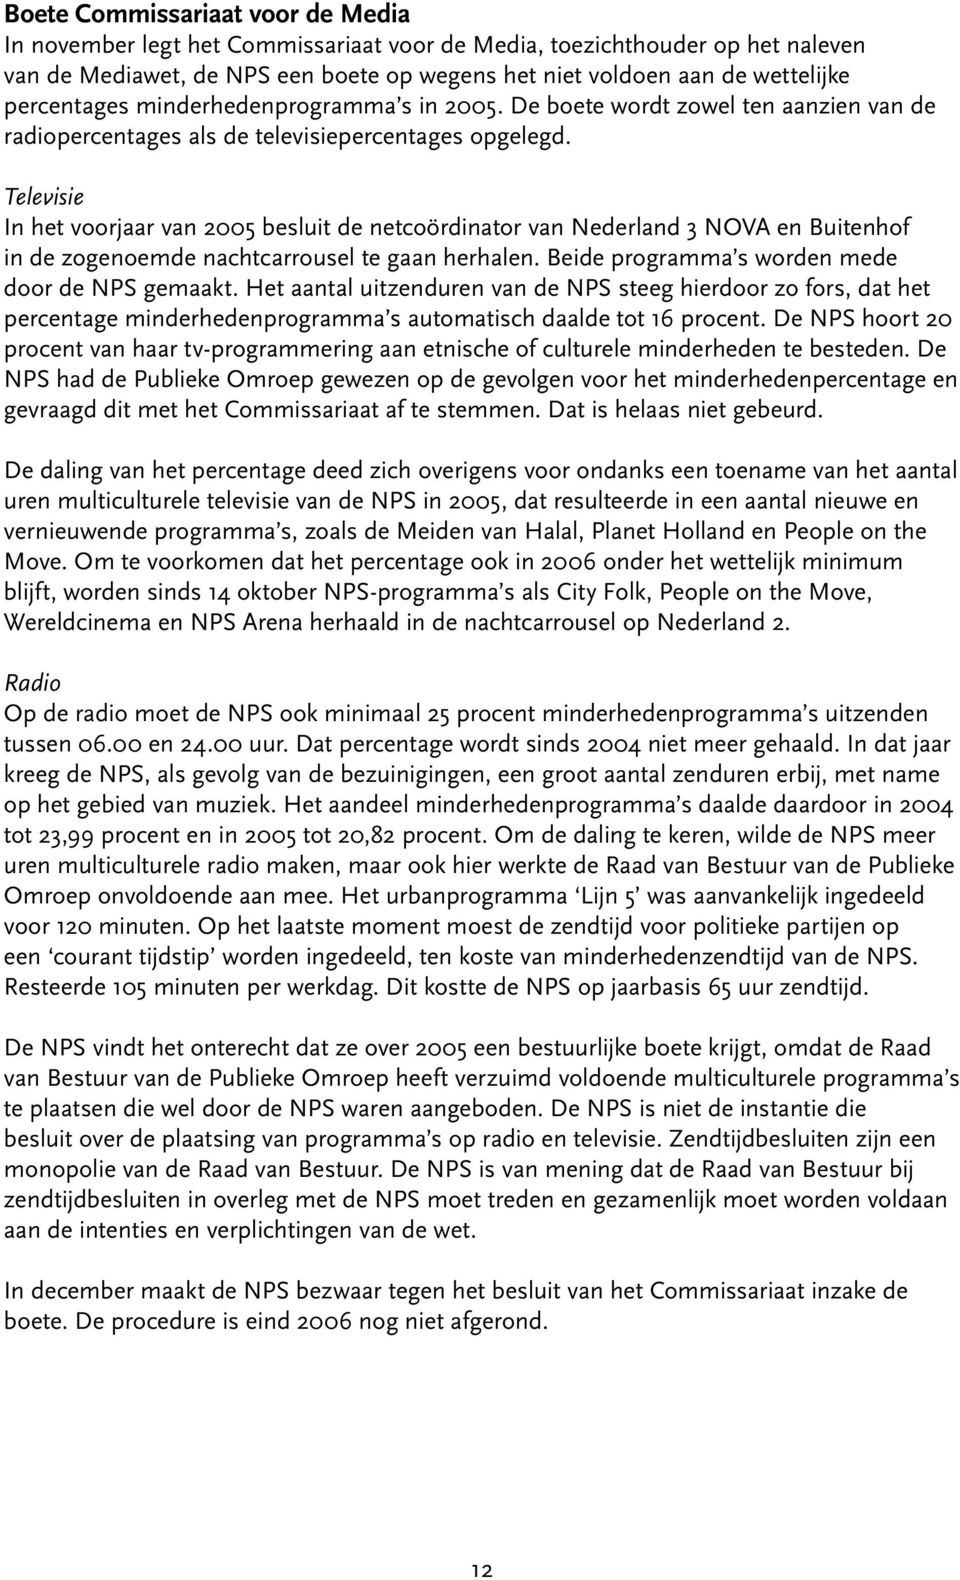 Televisie In het voorjaar van 2005 besluit de netcoördinator van Nederland 3 NOVA en Buitenhof in de zogenoemde nachtcarrousel te gaan herhalen. Beide programma s worden mede door de NPS gemaakt.